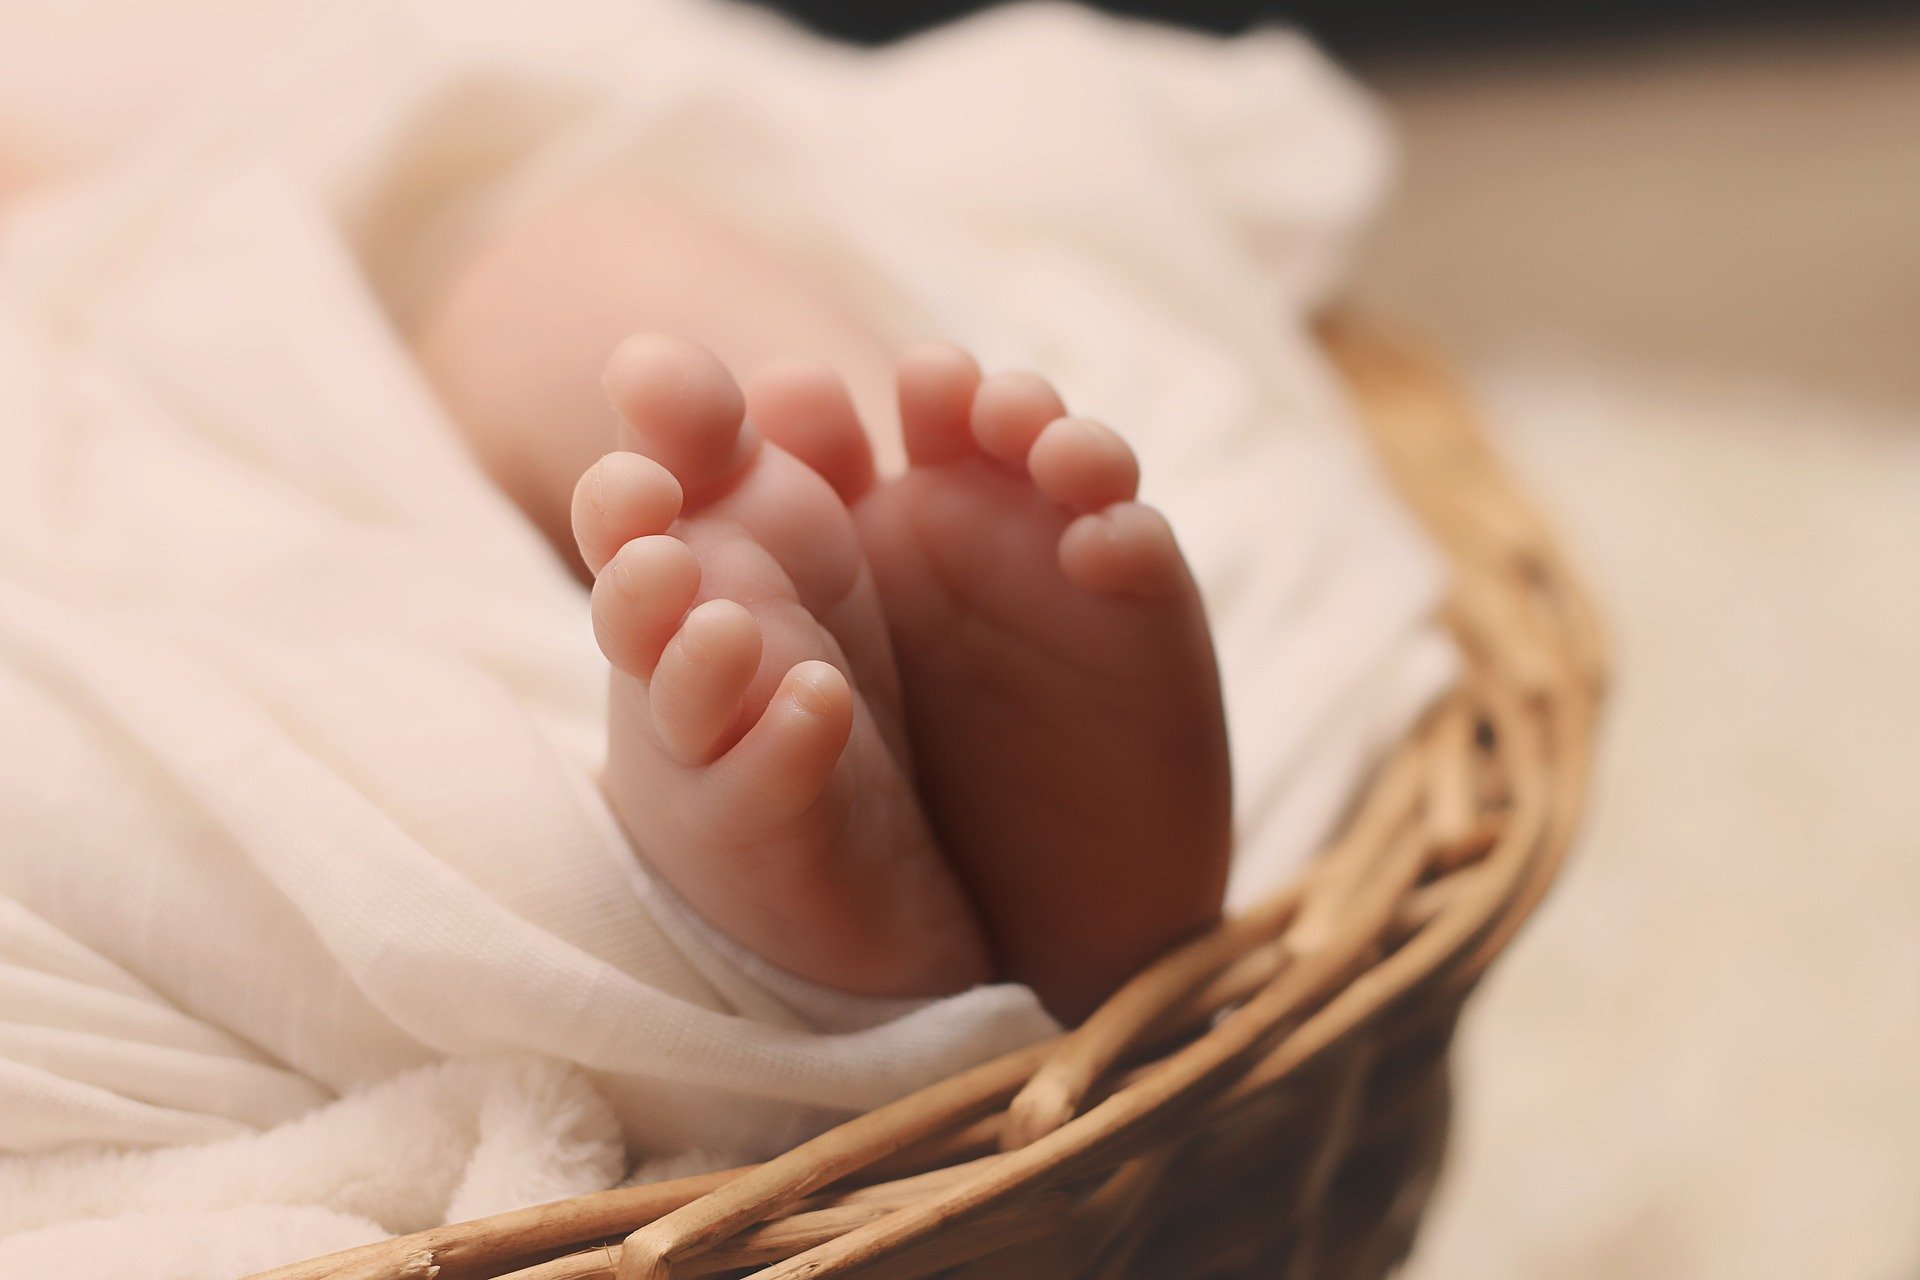 Conheça a rara Fetus in fetus quando o bebê nasce “gravido”